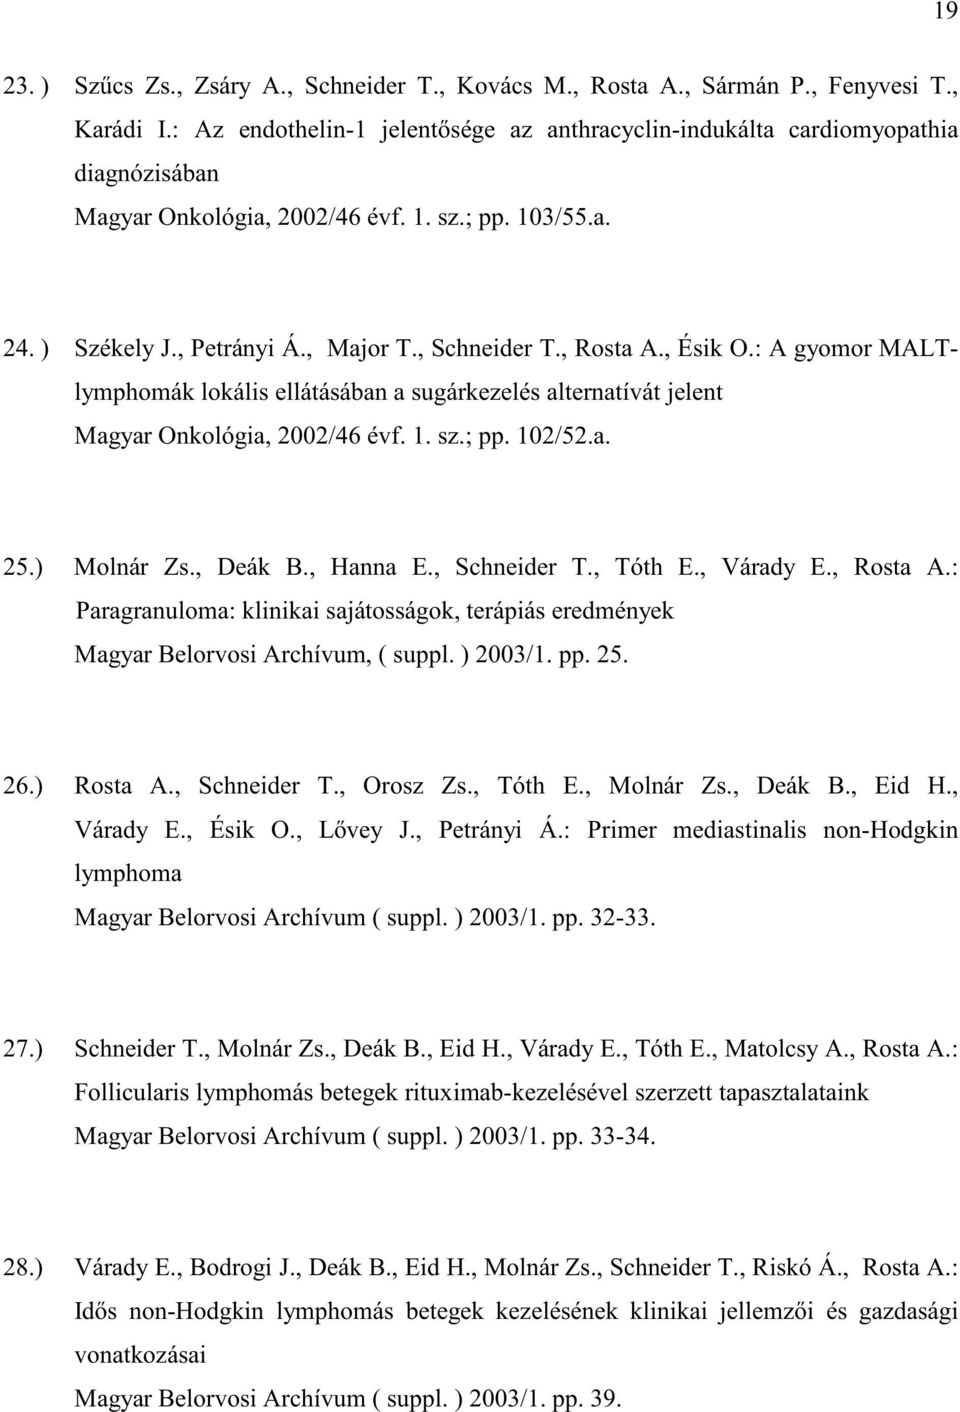 , Rosta A., Ésik O.: A gyomor MALTlymphomák lokális ellátásában a sugárkezelés alternatívát jelent Magyar Onkológia, 2002/46 évf. 1. sz.; pp. 102/52.a. 25.) Molnár Zs., Deák B., Hanna E., Schneider T.